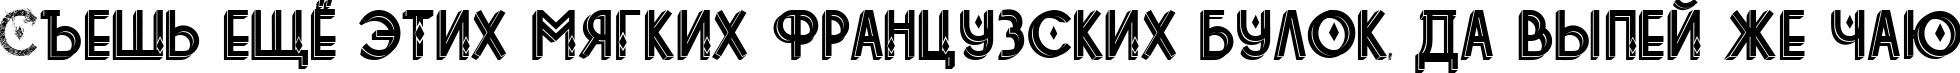 Пример написания шрифтом tetradecorative текста на русском